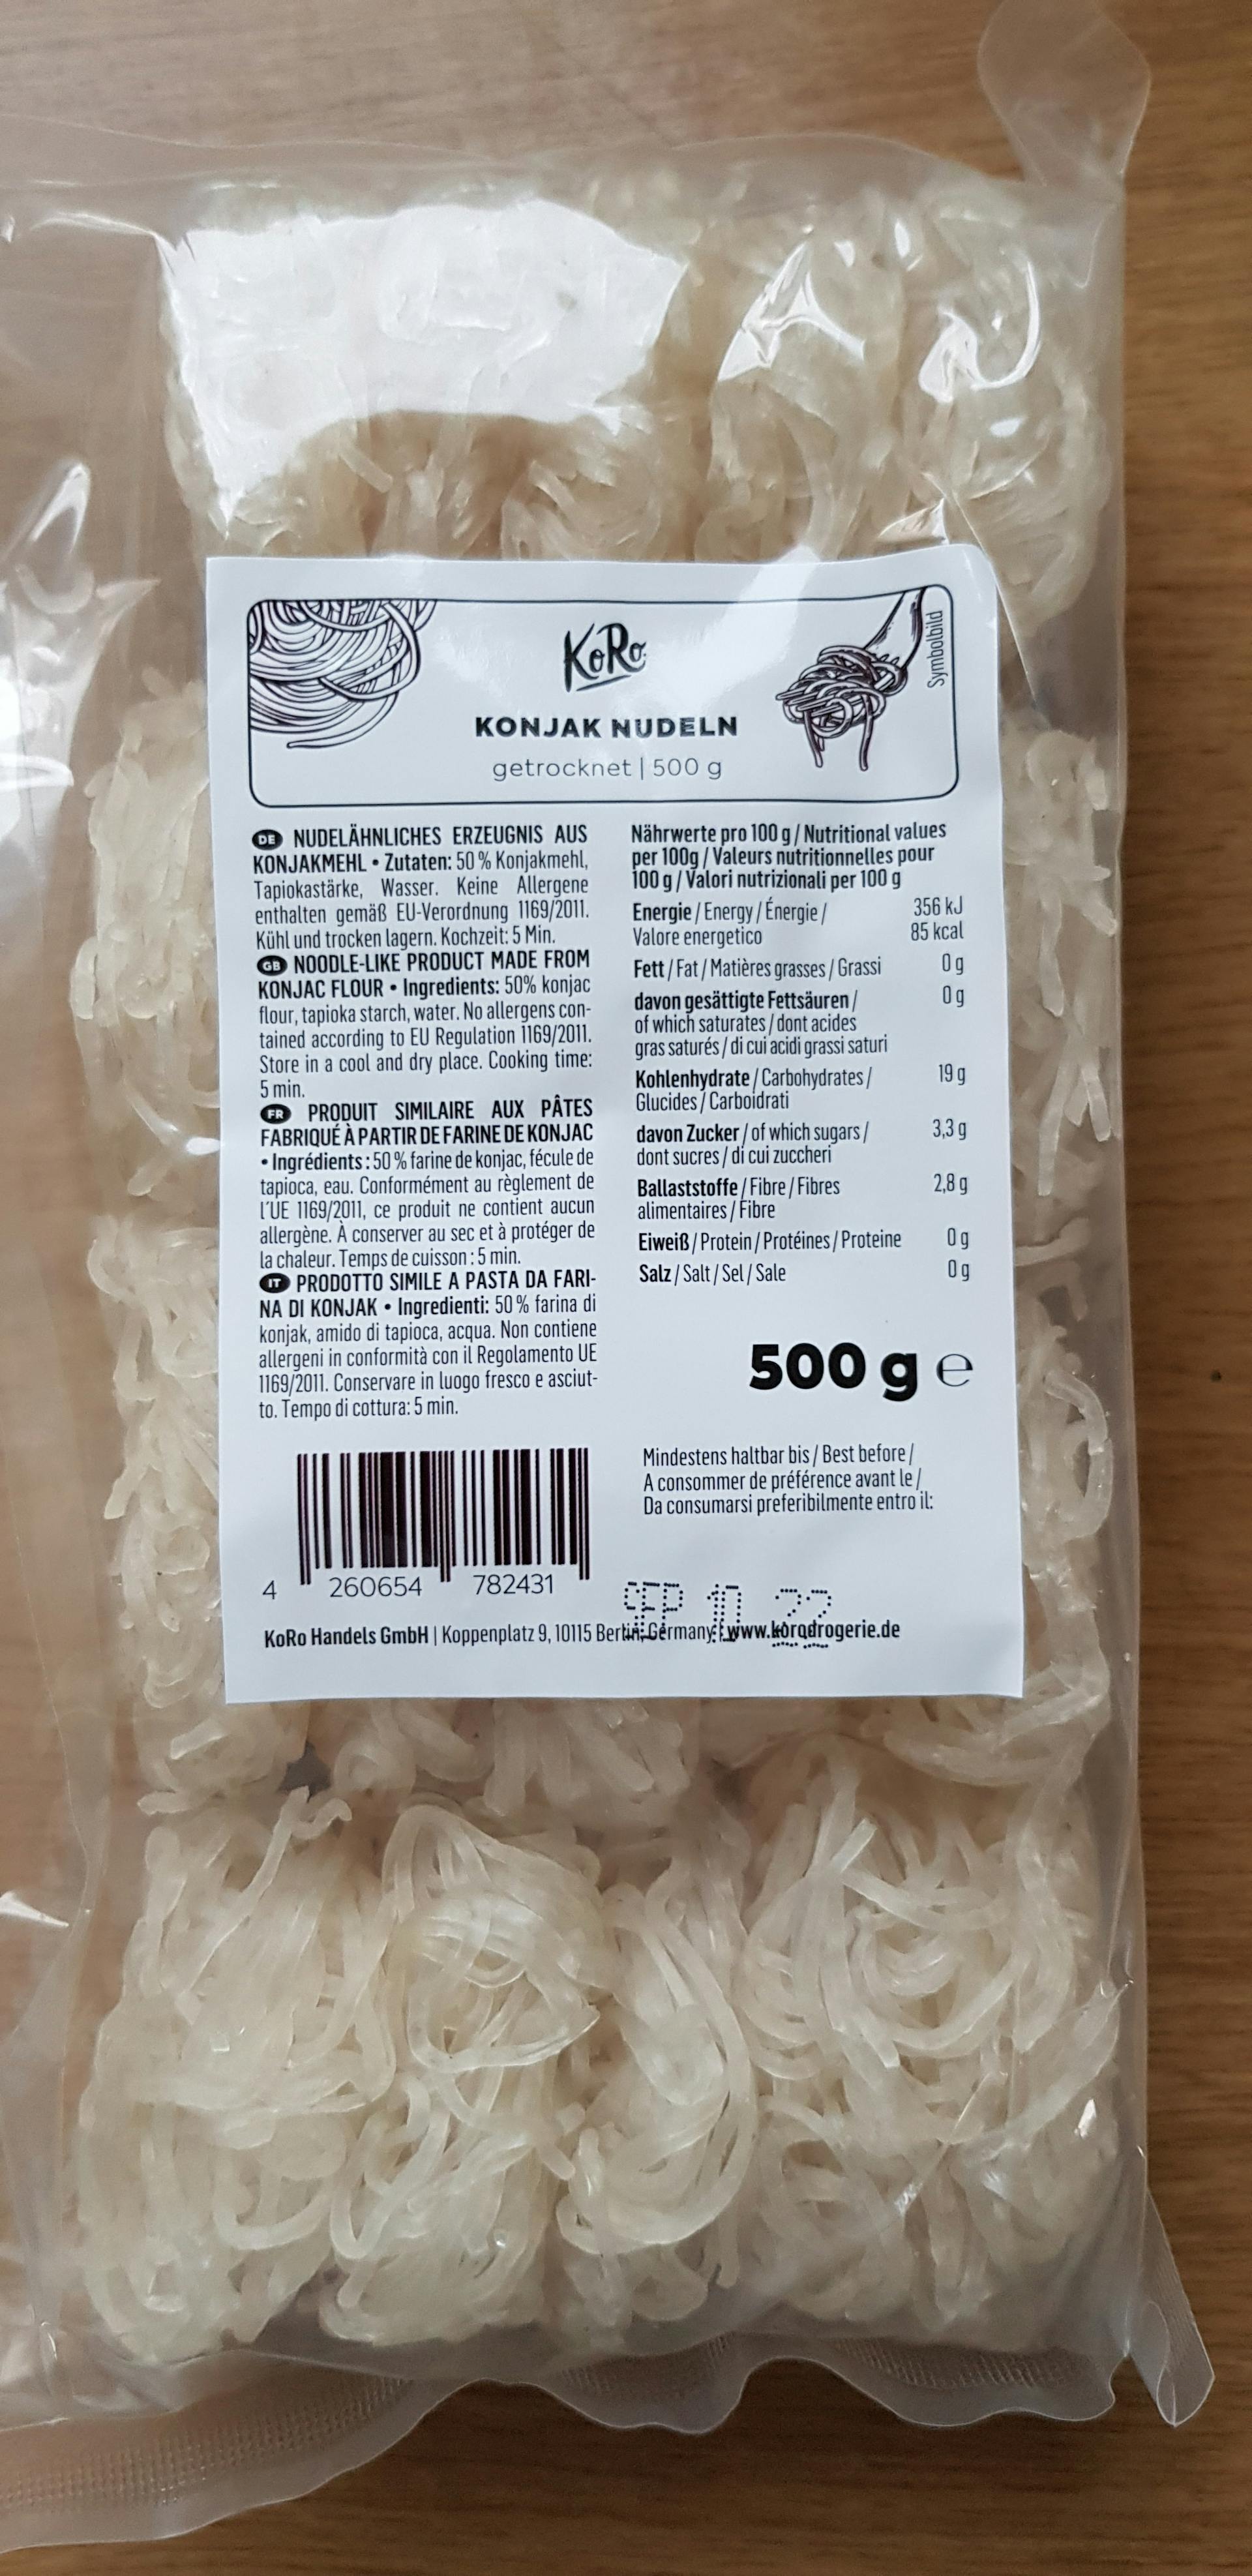 zuigen in beroep gaan getuige Gedroogde konjac-noedels kopen | KoRo Nederland